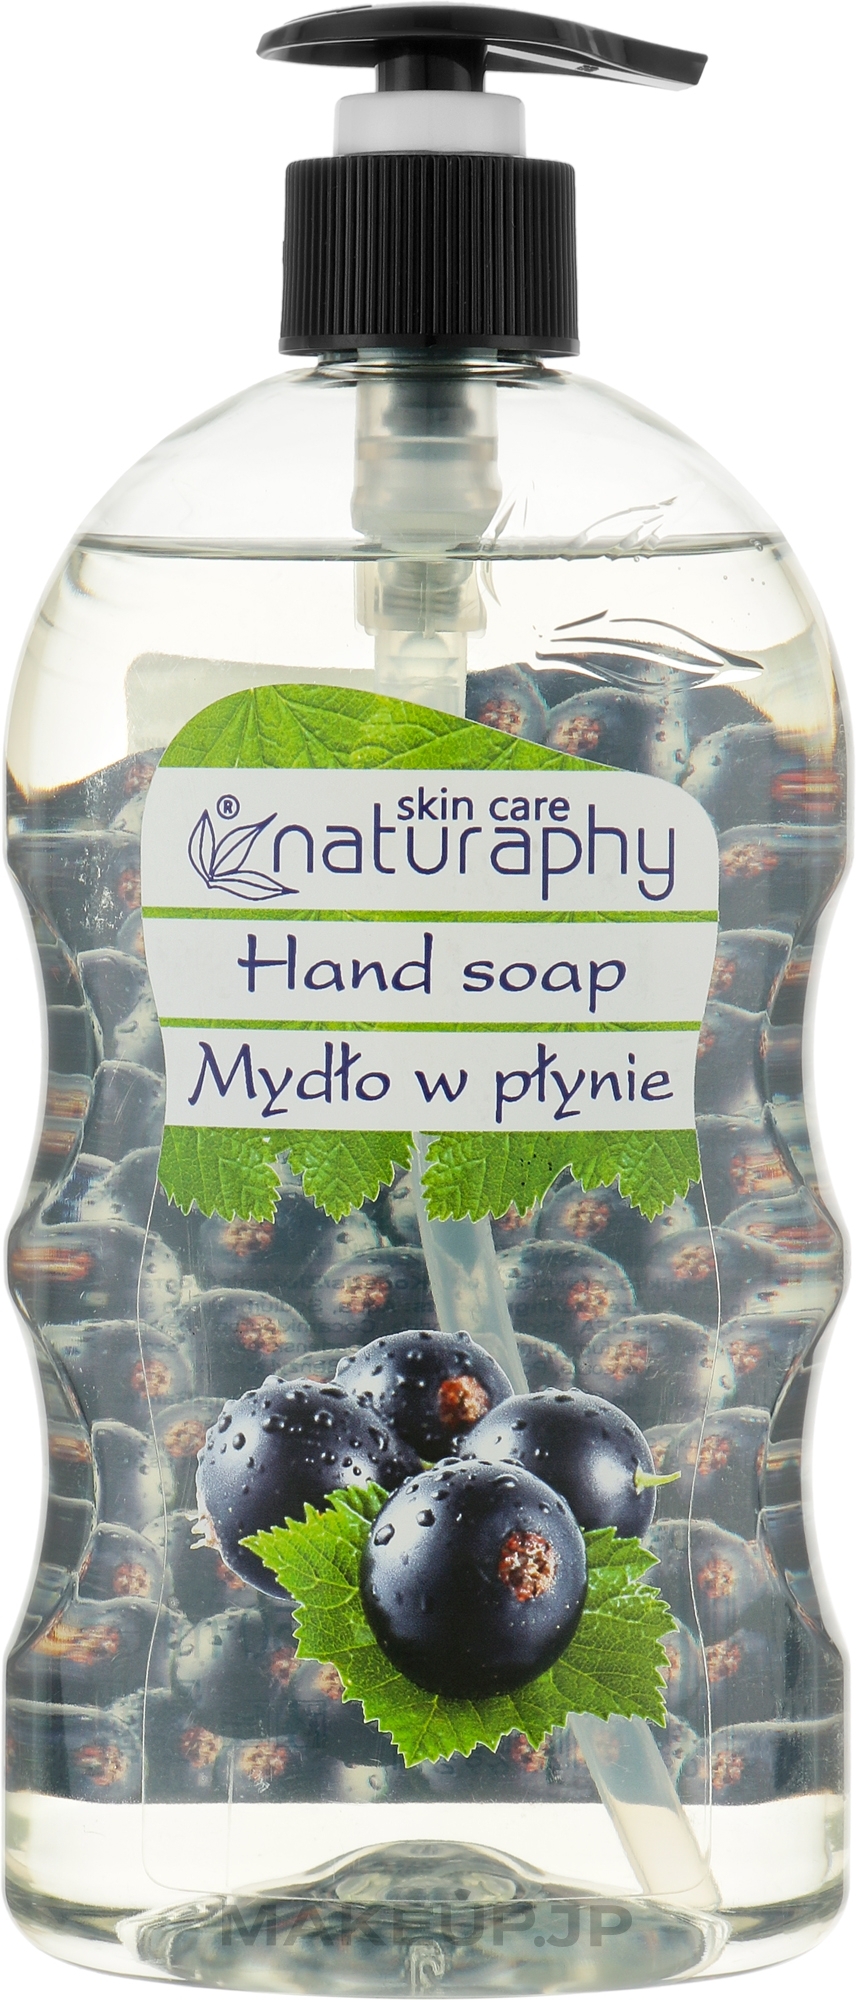 Black Currant & Aloe Vera Hand Soap - Naturaphy Hand Soap — photo 650 ml